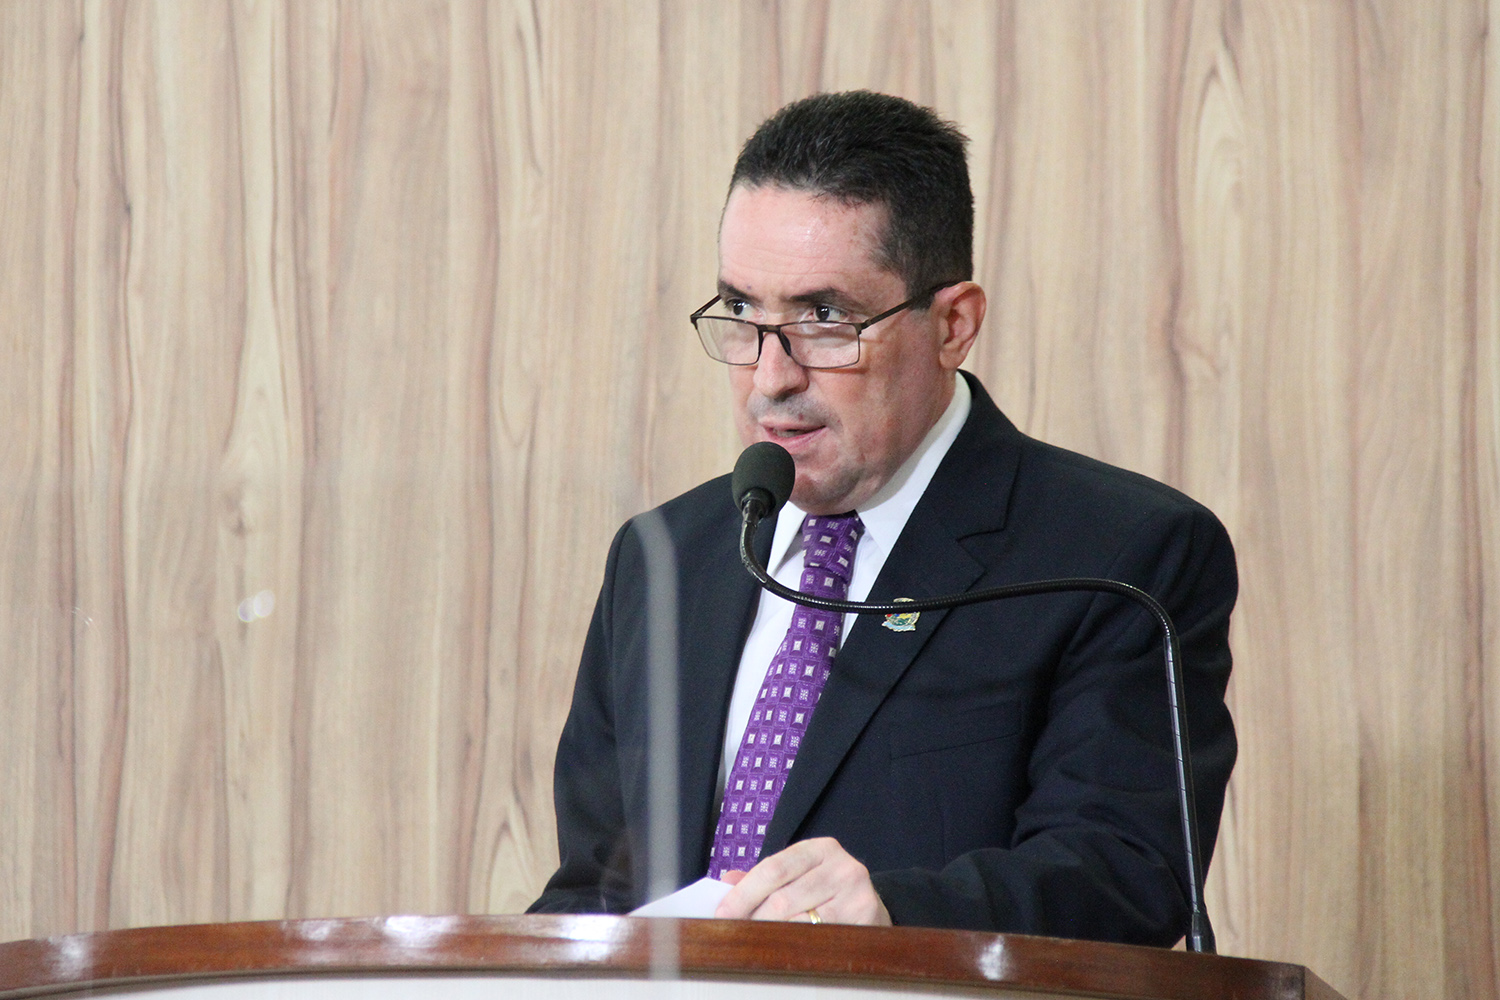 #PraCegoVer: foto mostra o vereador Fábio Damasceno discursando na tribuna da Câmara.